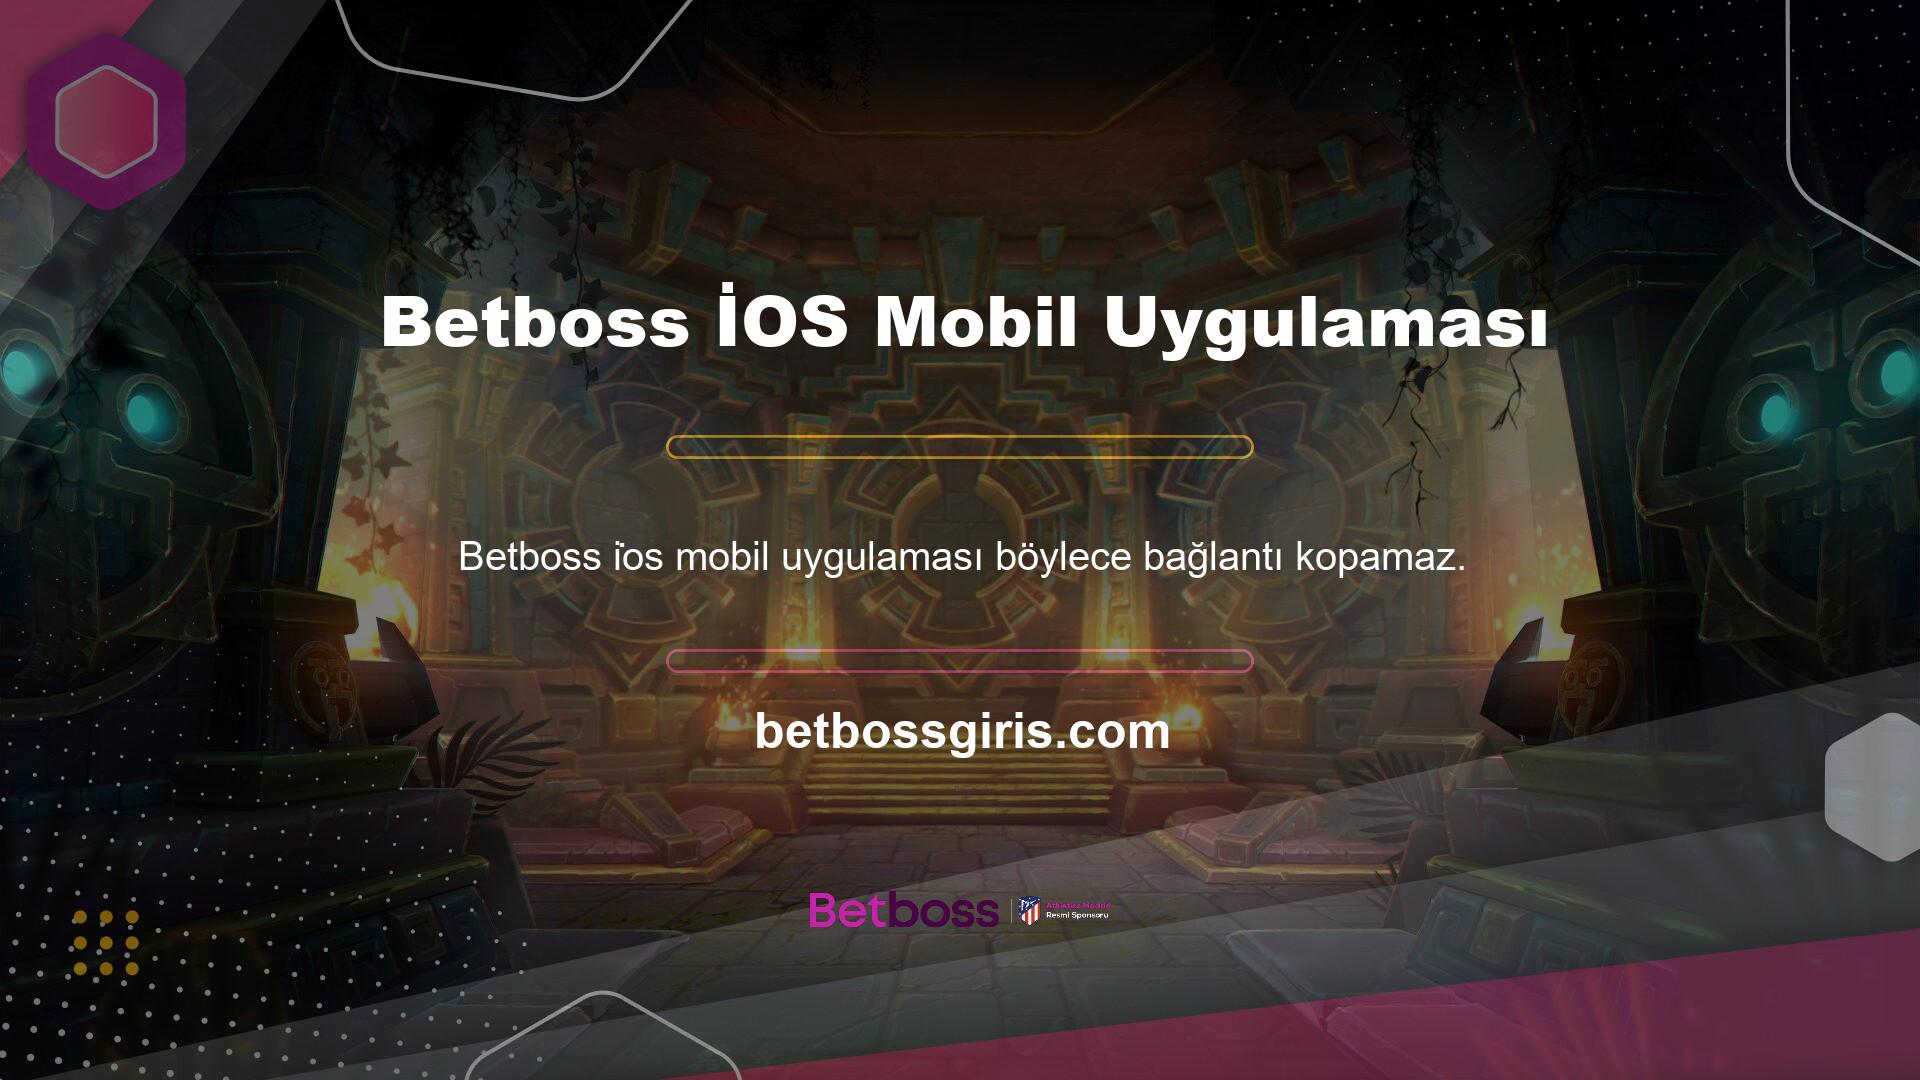 Web sitesi, Betboss İOS mobil uygulaması hakkında bilgi almak, giriş yapmak ve üye olduktan sonra para yatırmak için 7/24 müşteri desteği sağlar